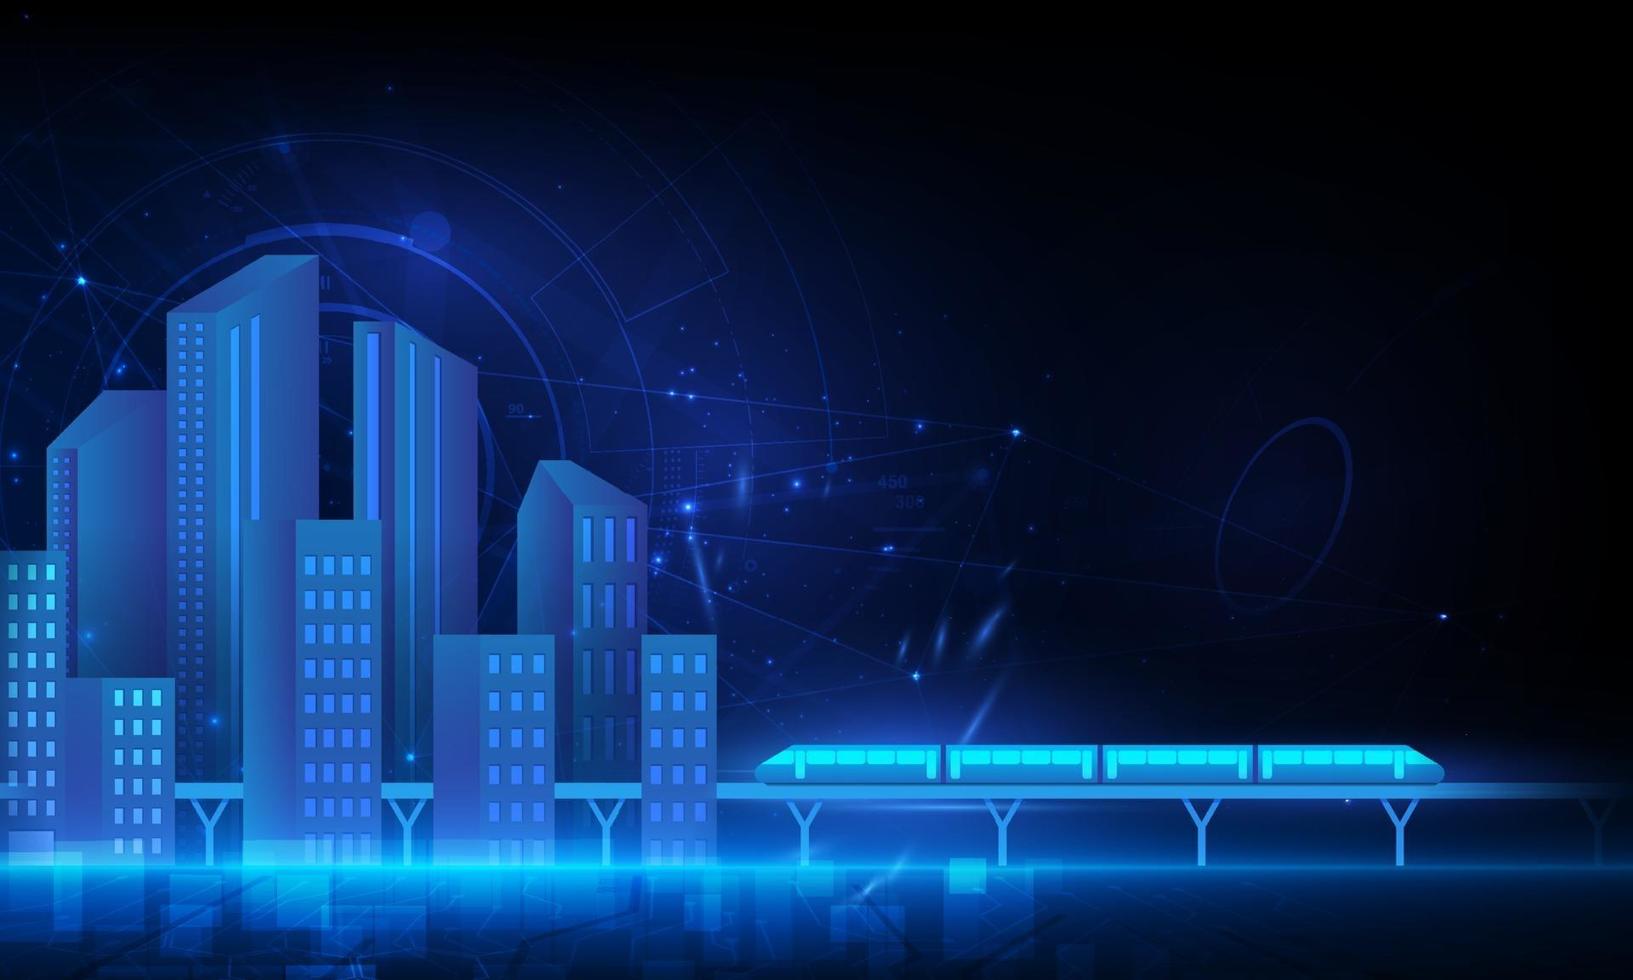 ciudad inteligente y red de comunicación inalámbrica, red inalámbrica 5g y concepto de ciudad inteligente. vector